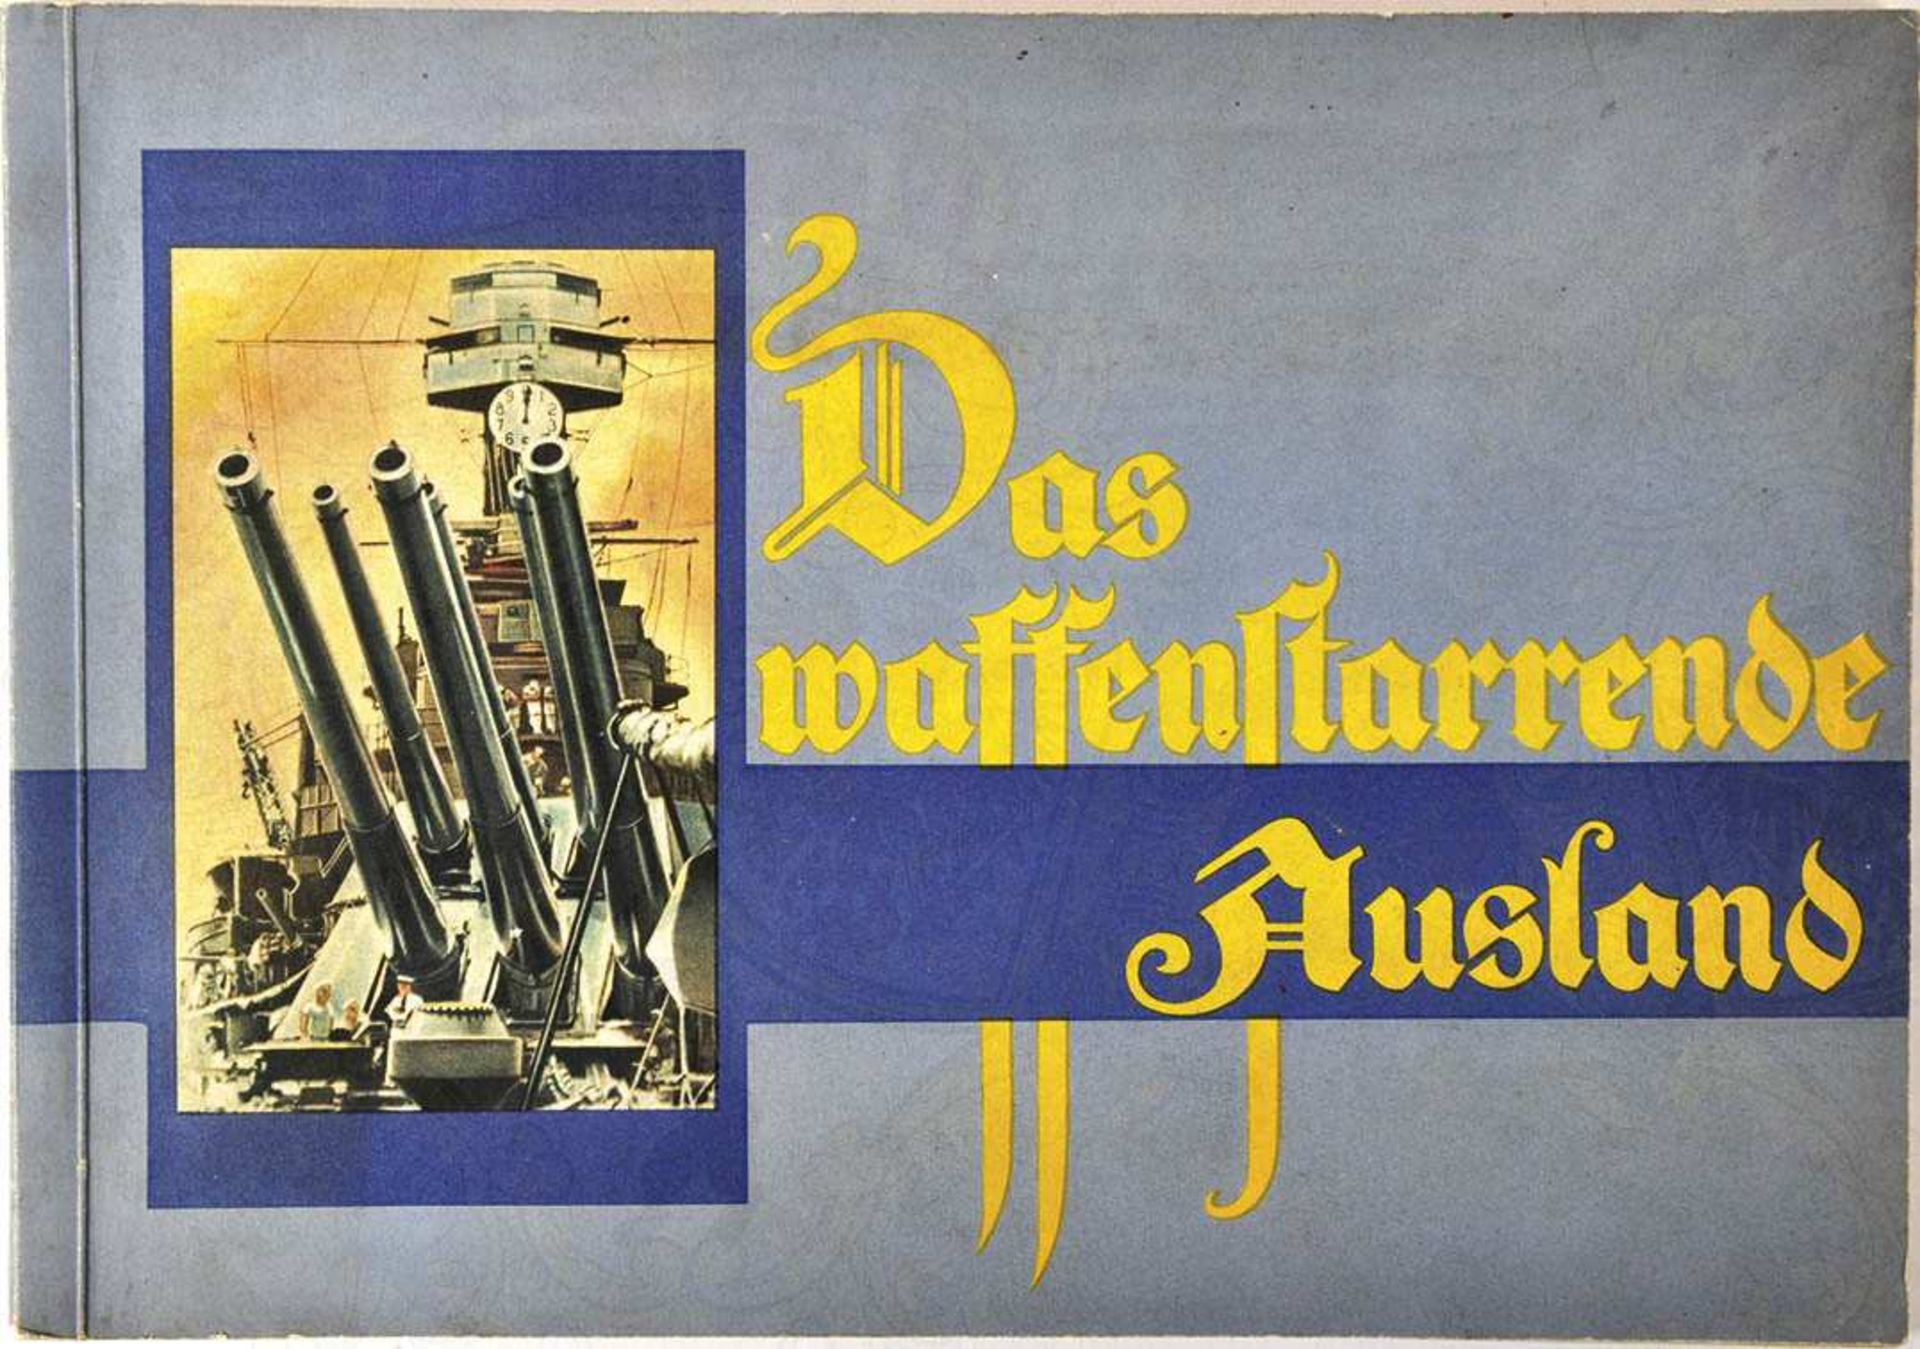 DAS WAFFENSTARRENDE AUSLAND, Brinkmann, Bremen 1934, 300 farb. Bilder kpl., 4 Farbtafeln, kart. <